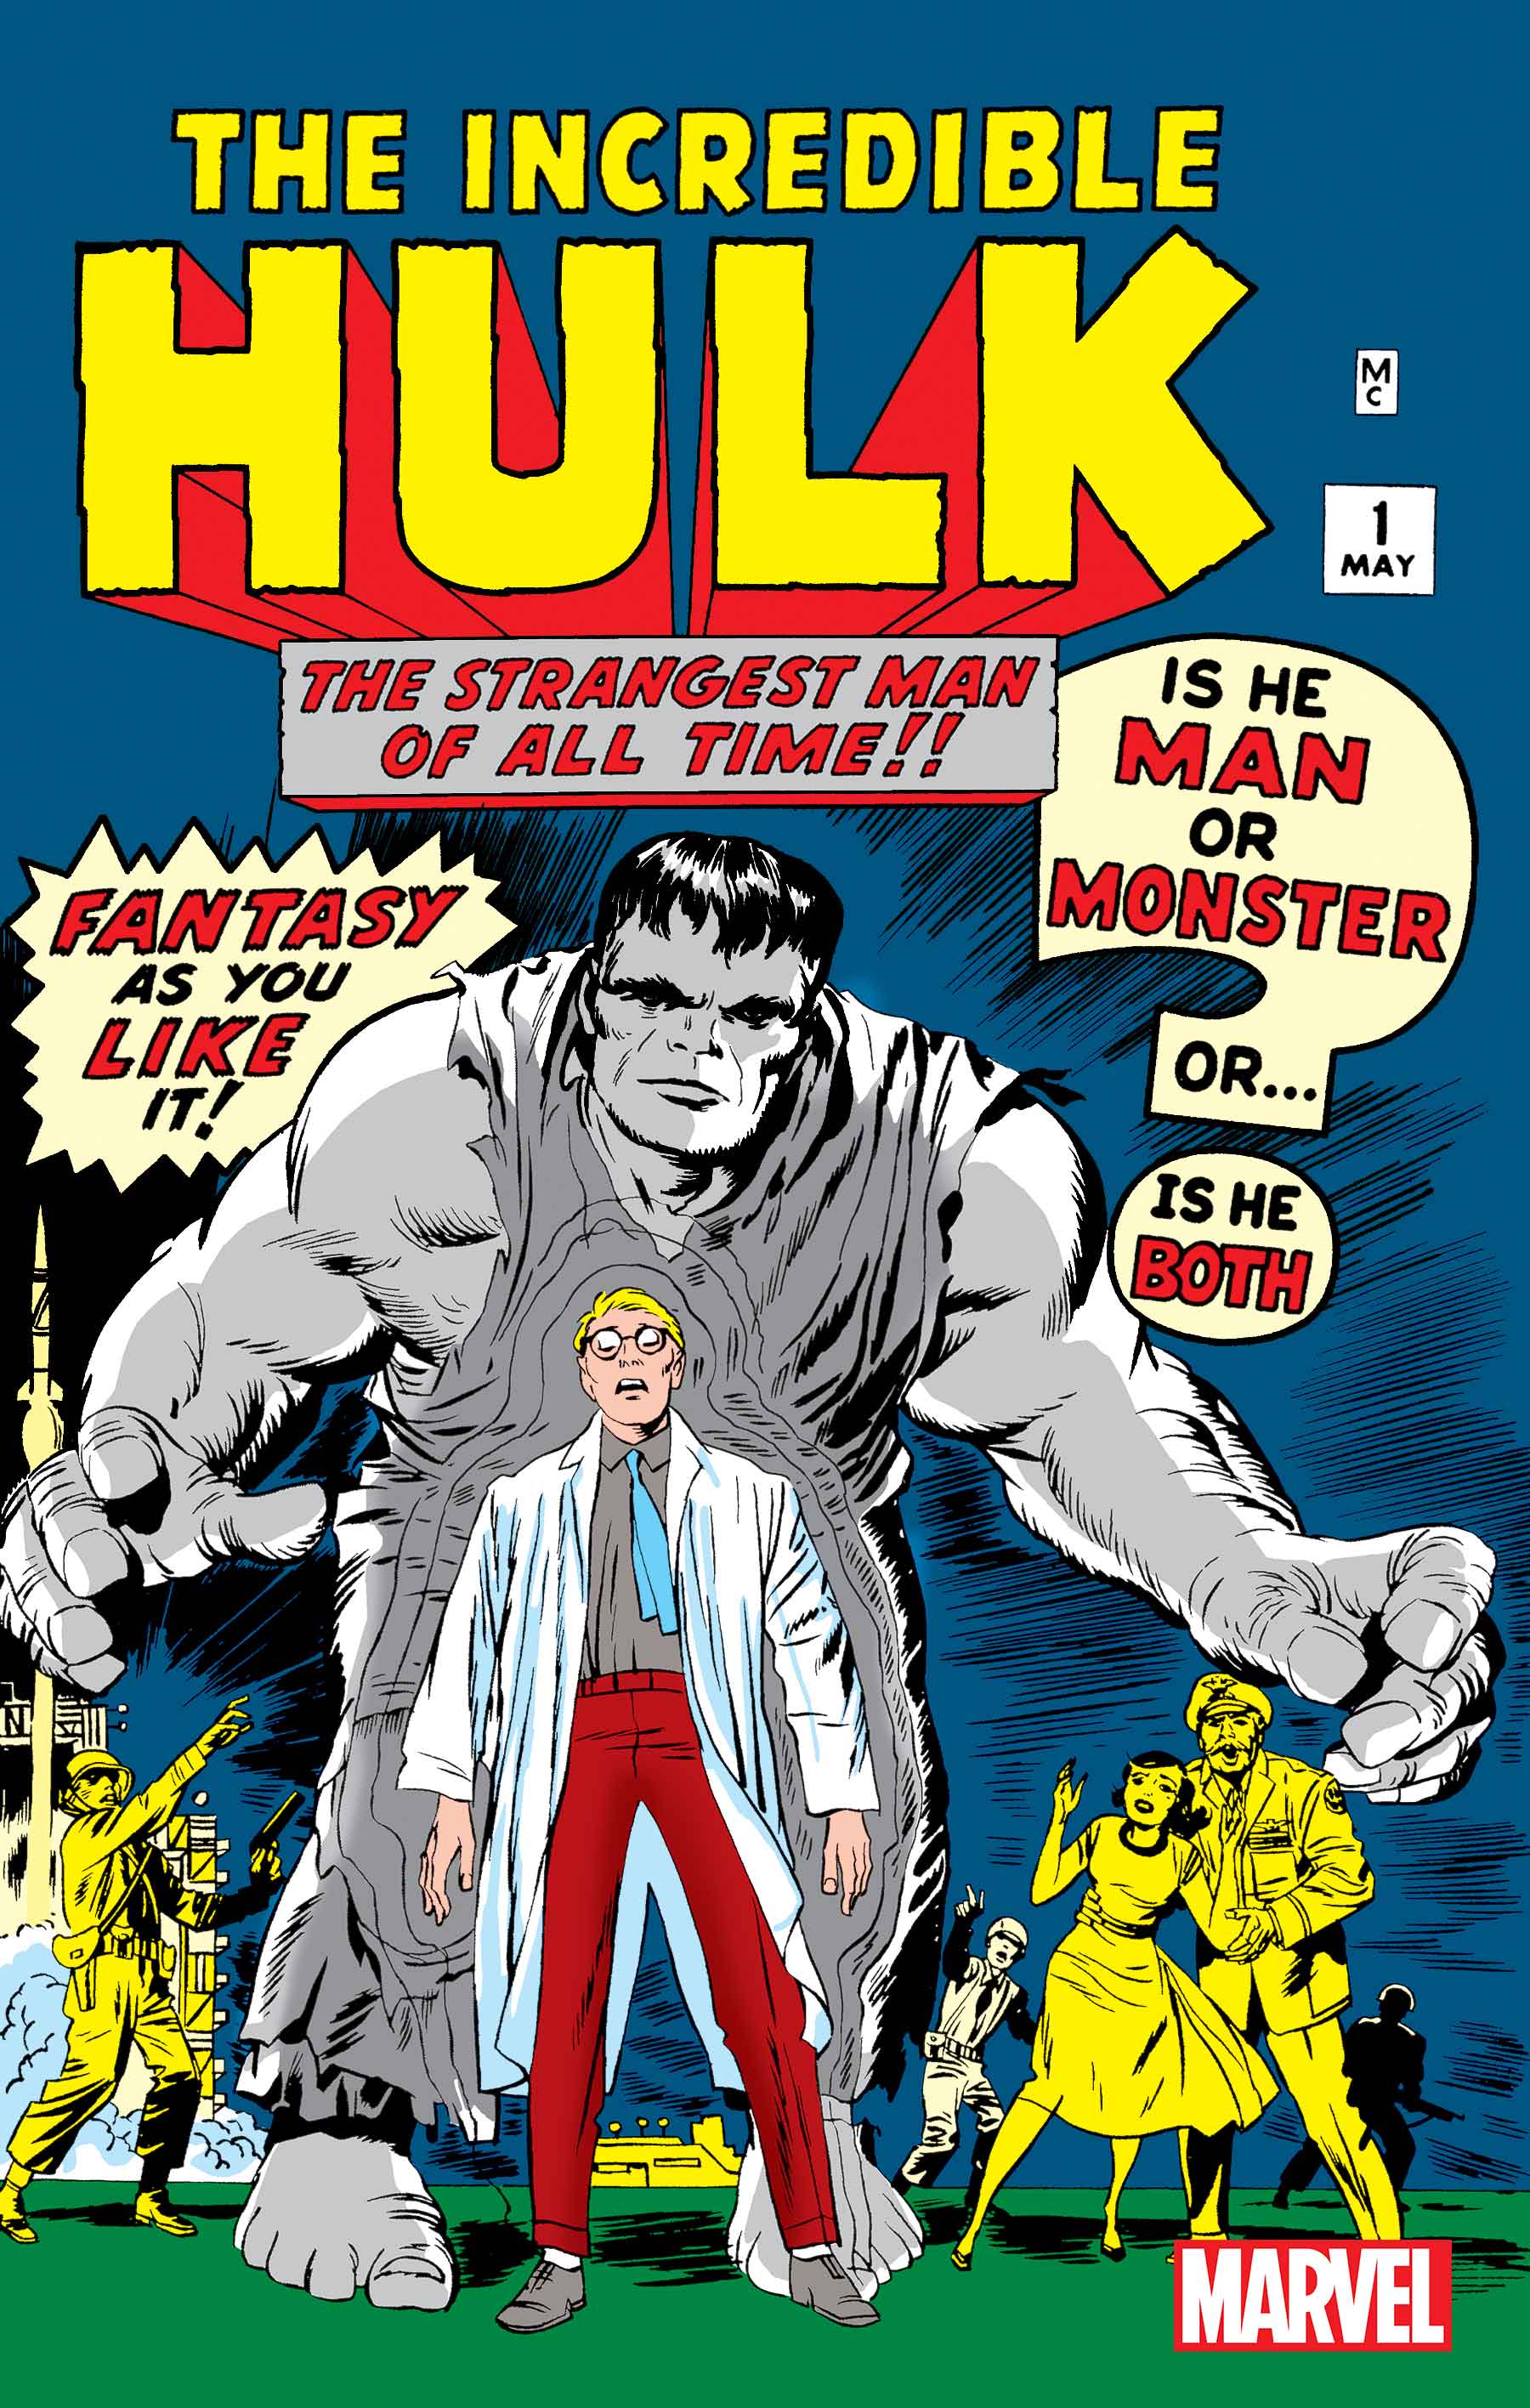 Incredible hulk #1 1962